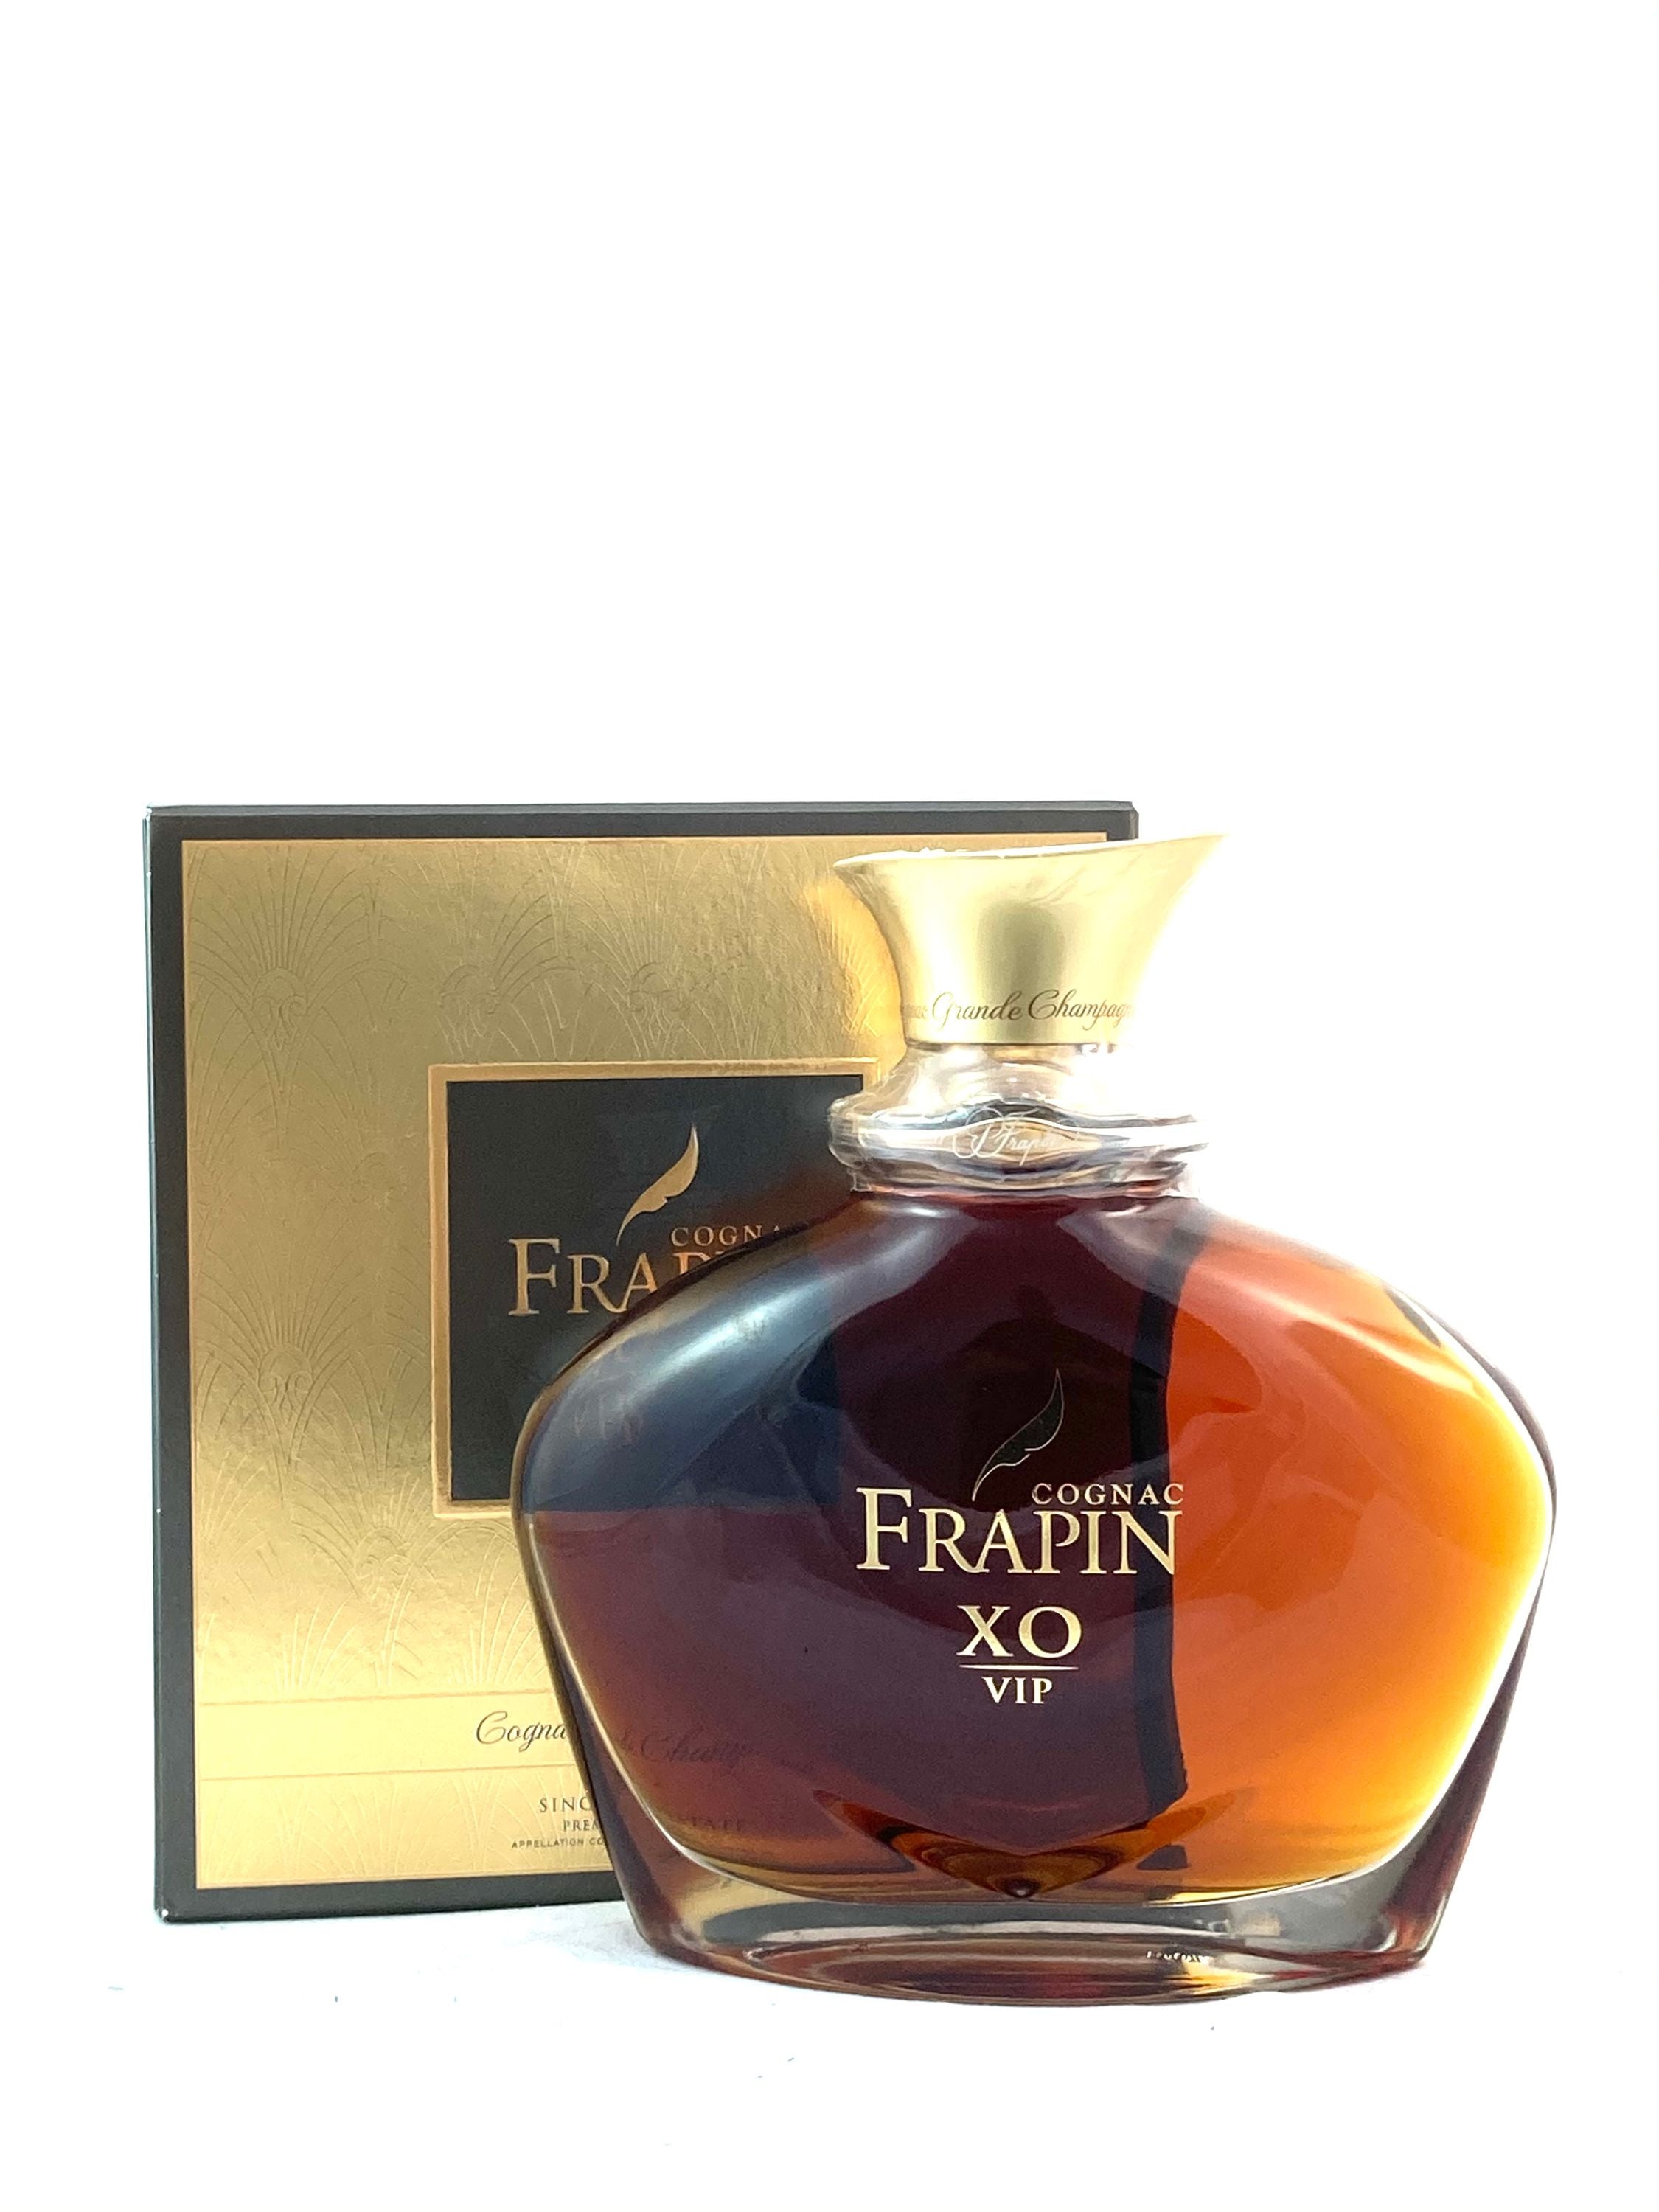 Frapin XO V.I.P 0,7l, alc. 40 Vol.-%, Cognac  Frankreich